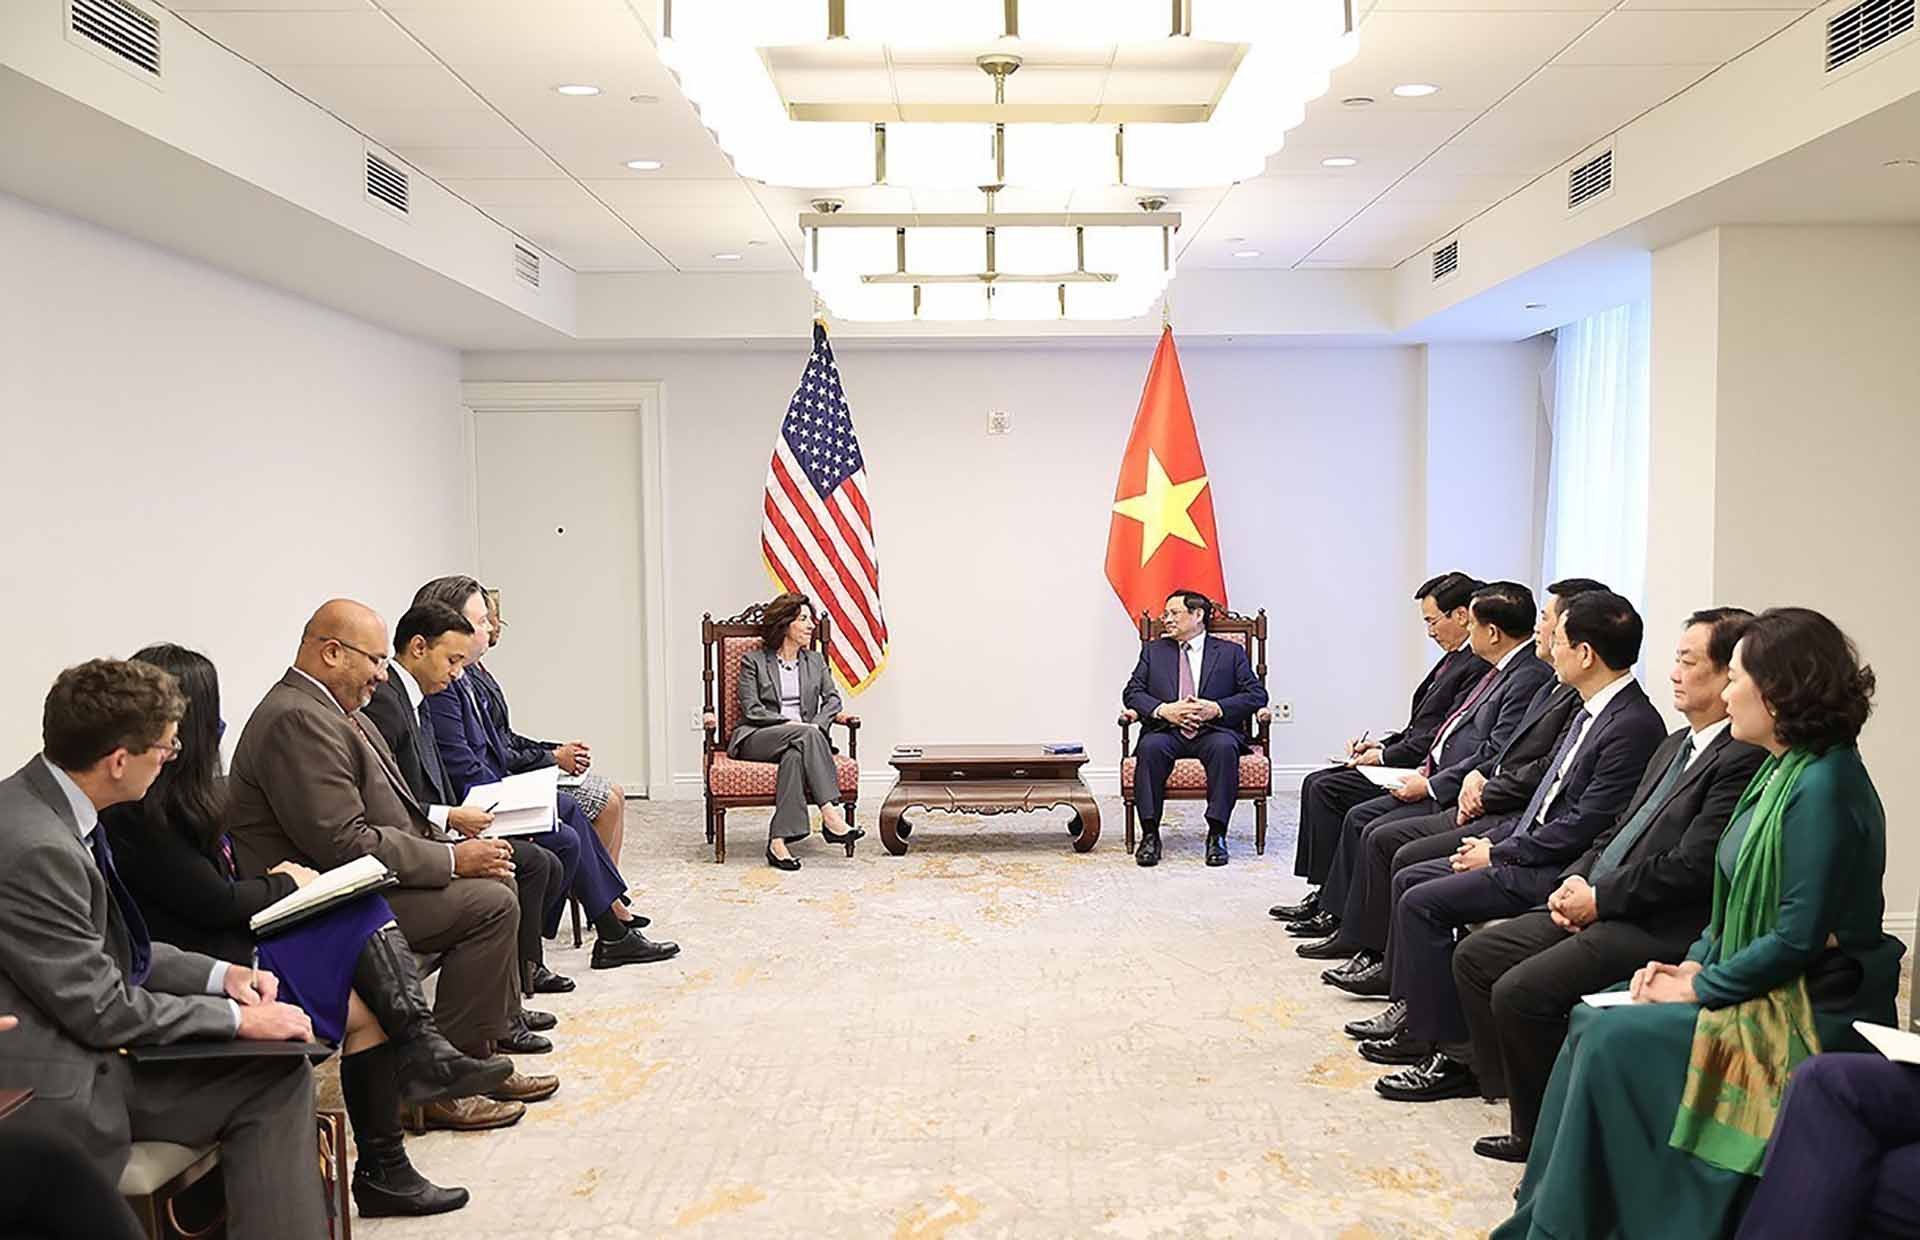 Thủ tướng Phạm Minh Chính tiếp Bộ trưởng Thương mại Hoa Kỳ